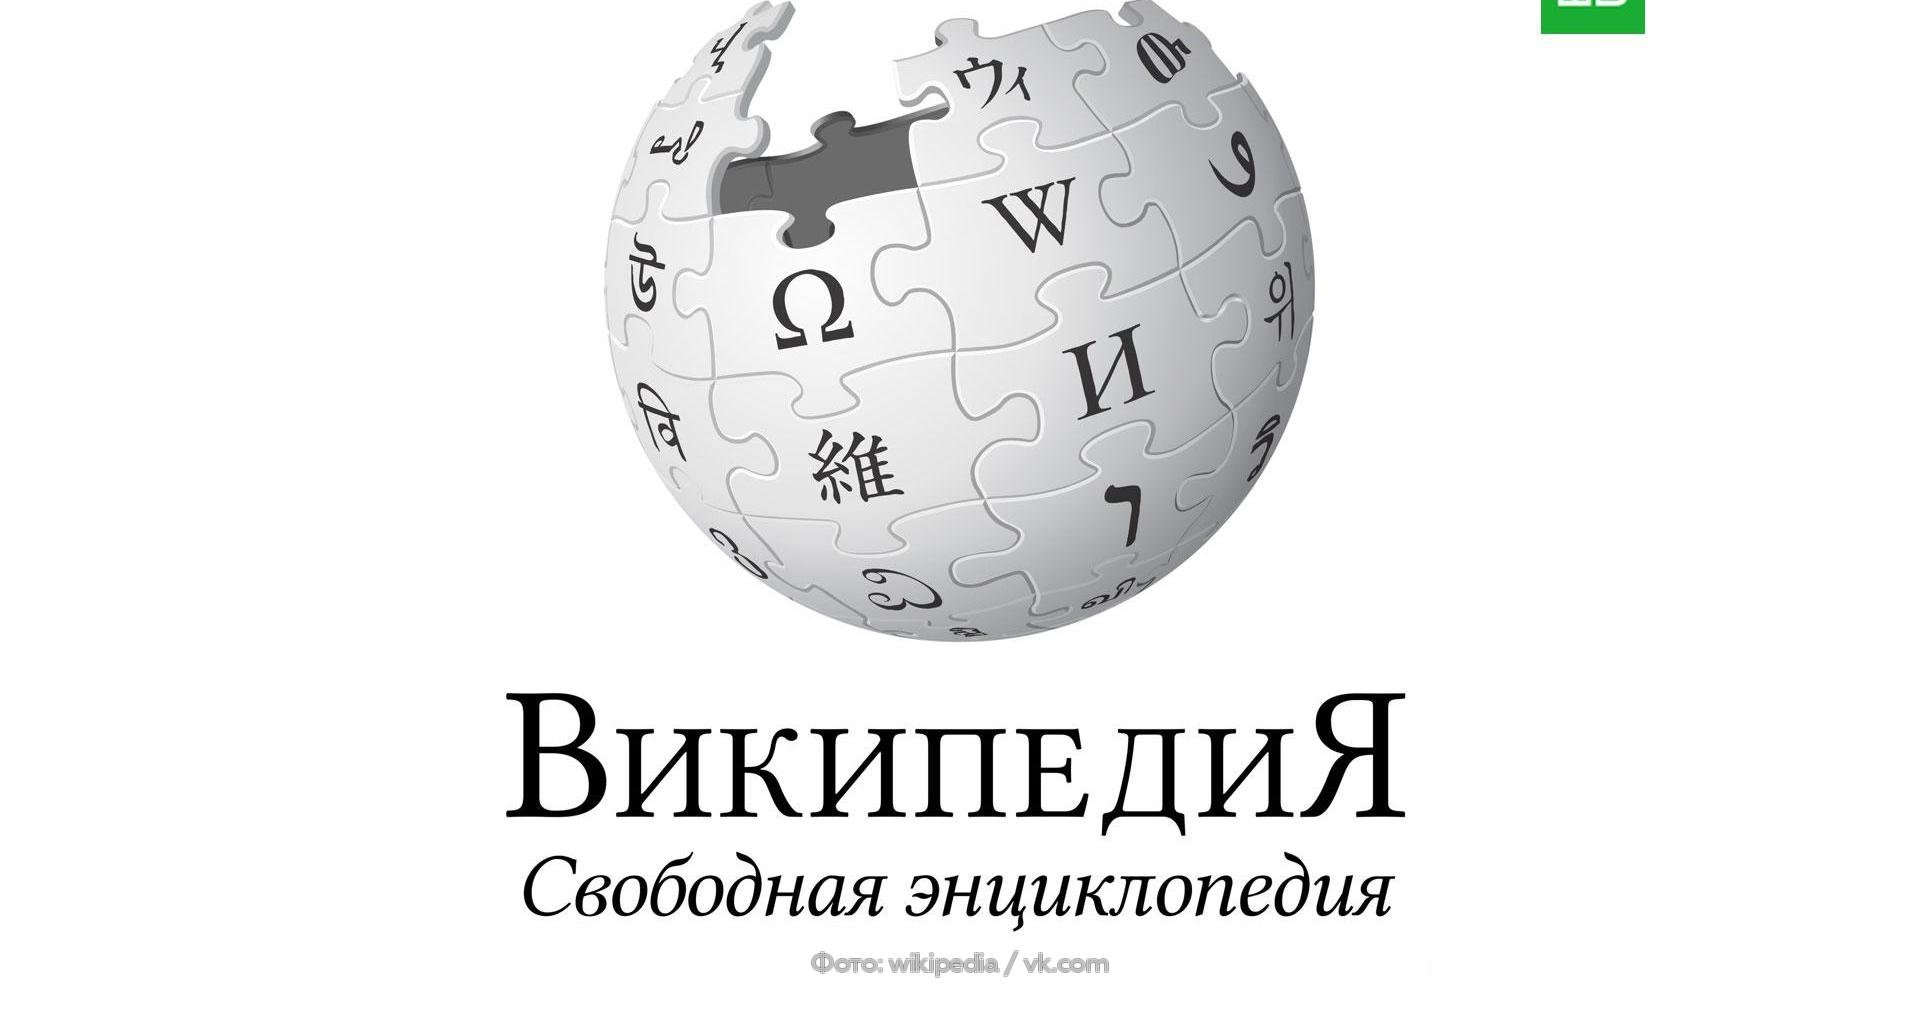 Https ru wikipedia org w. Википедия лого. Wikipedia фото. Википедия логотип картинка. Википедия картинки.